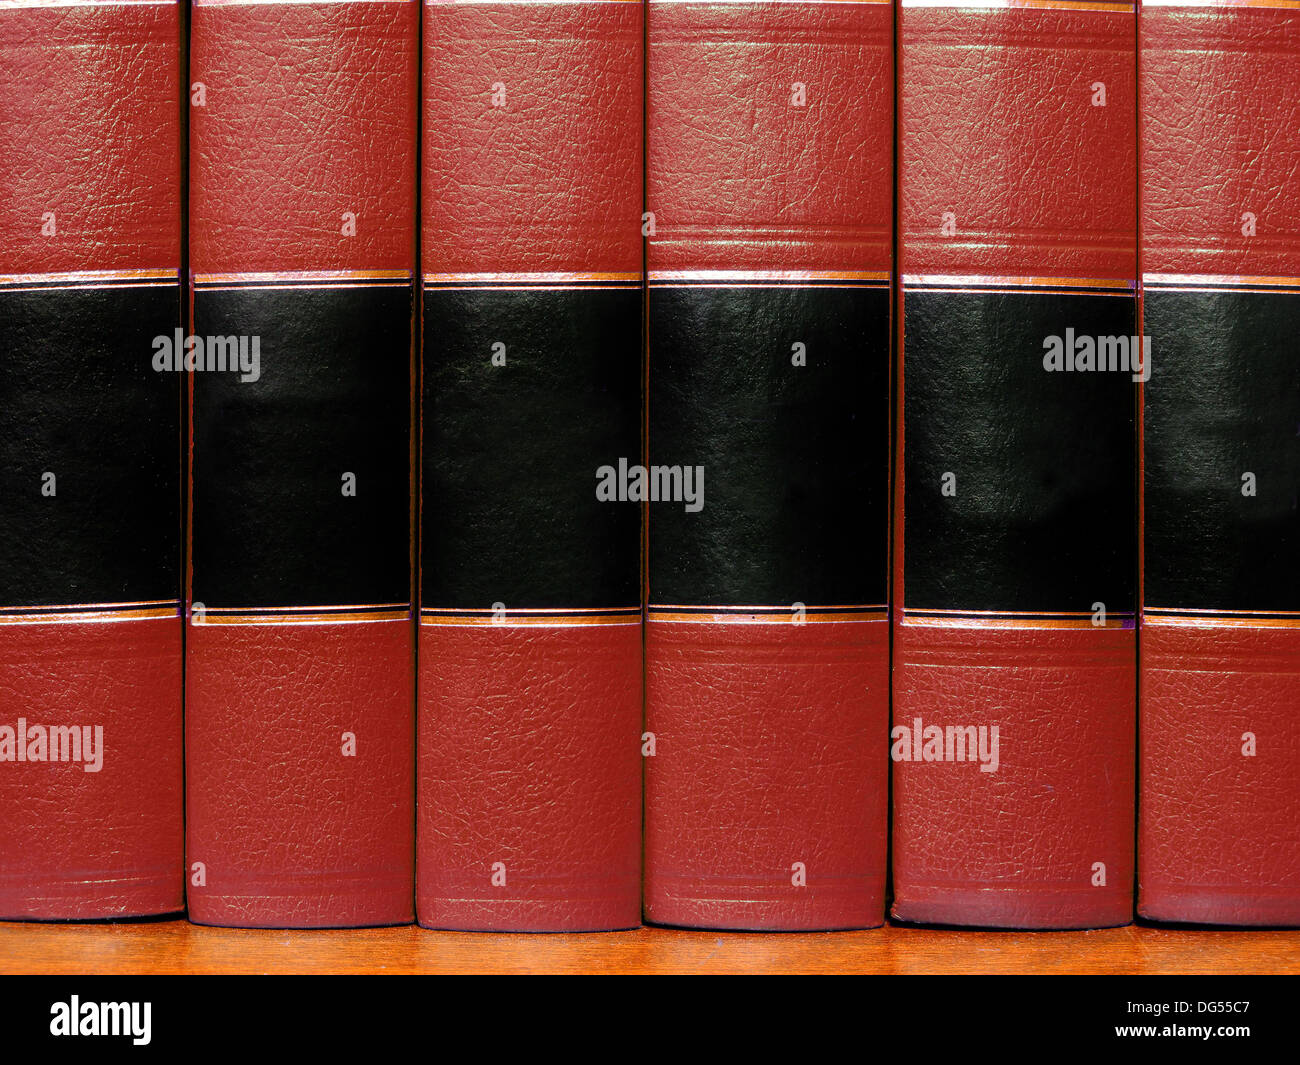 Reihe der alten roten Leder Bücher auf einem Regal leer Abdeckungen Stockfoto